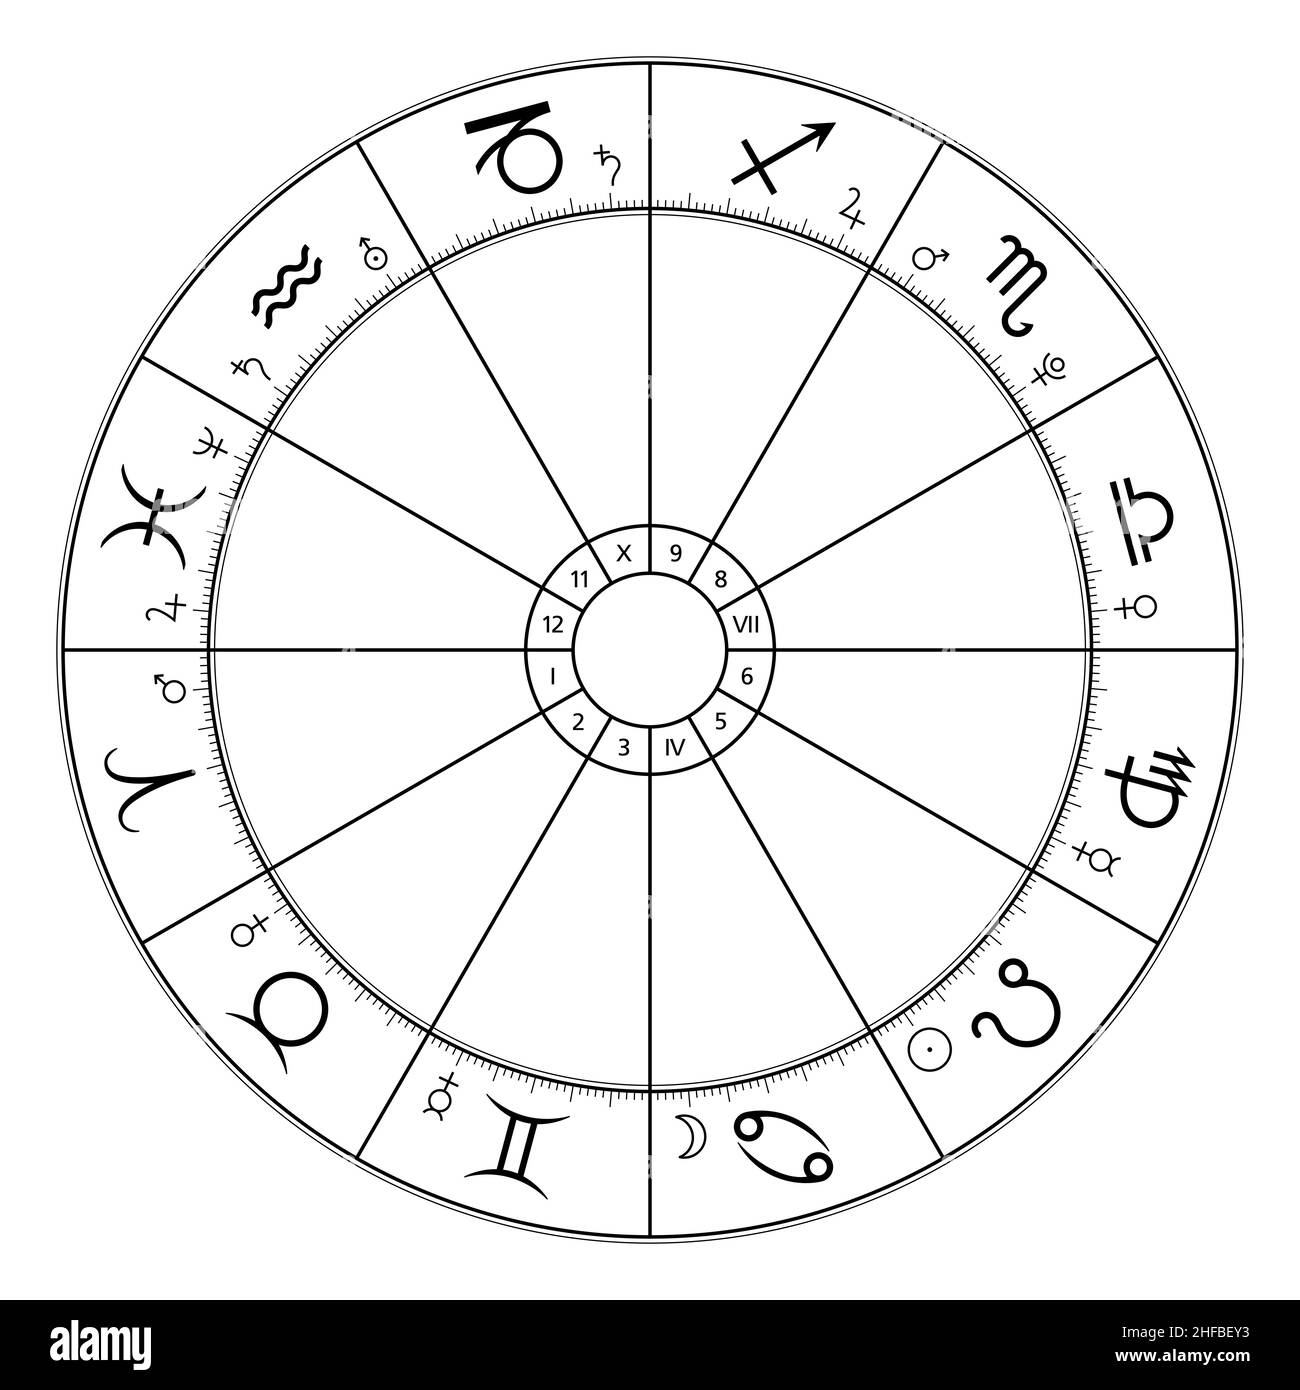 Sternkreis, astrologisches Diagramm, das zwölf Sternzeichen und zugehörige Planetensymbole zeigt. Das Rad des Tierkreises, das in der modernen Horoskopastrologie verwendet wird. Stockfoto